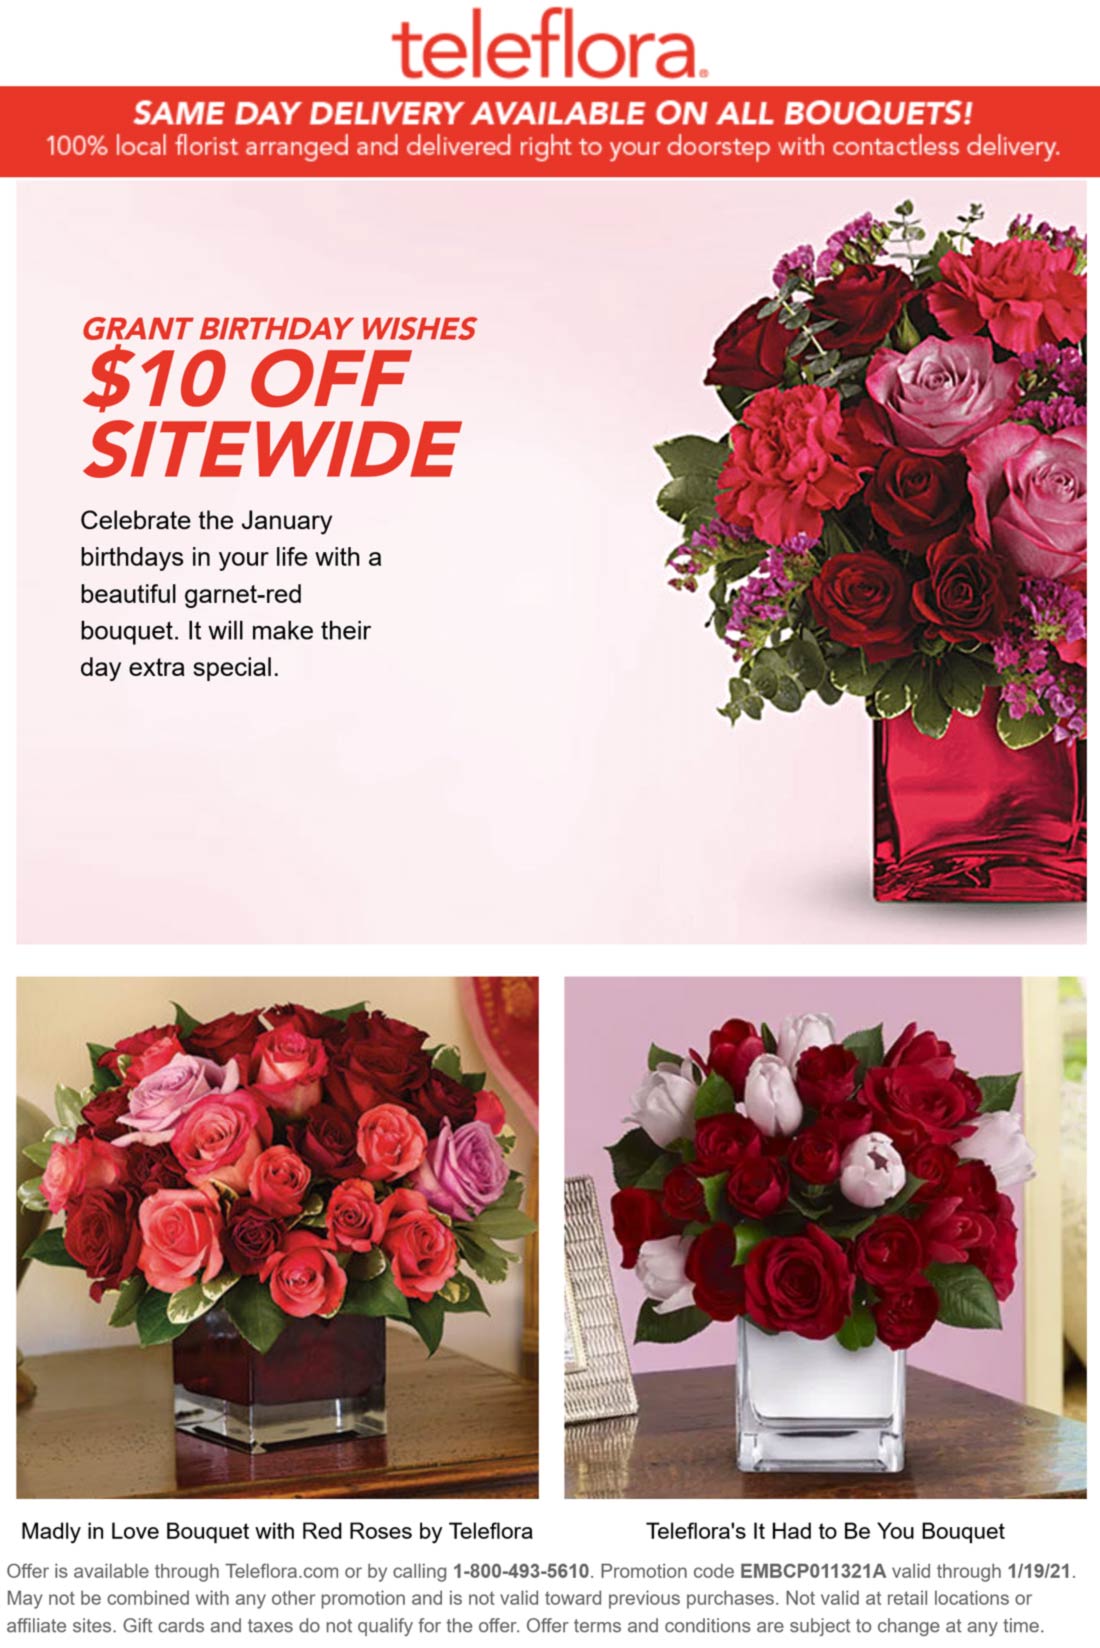 Teleflora stores Coupon  $10 off flowers from Teleflora via promo code EMBCP011321A #teleflora 